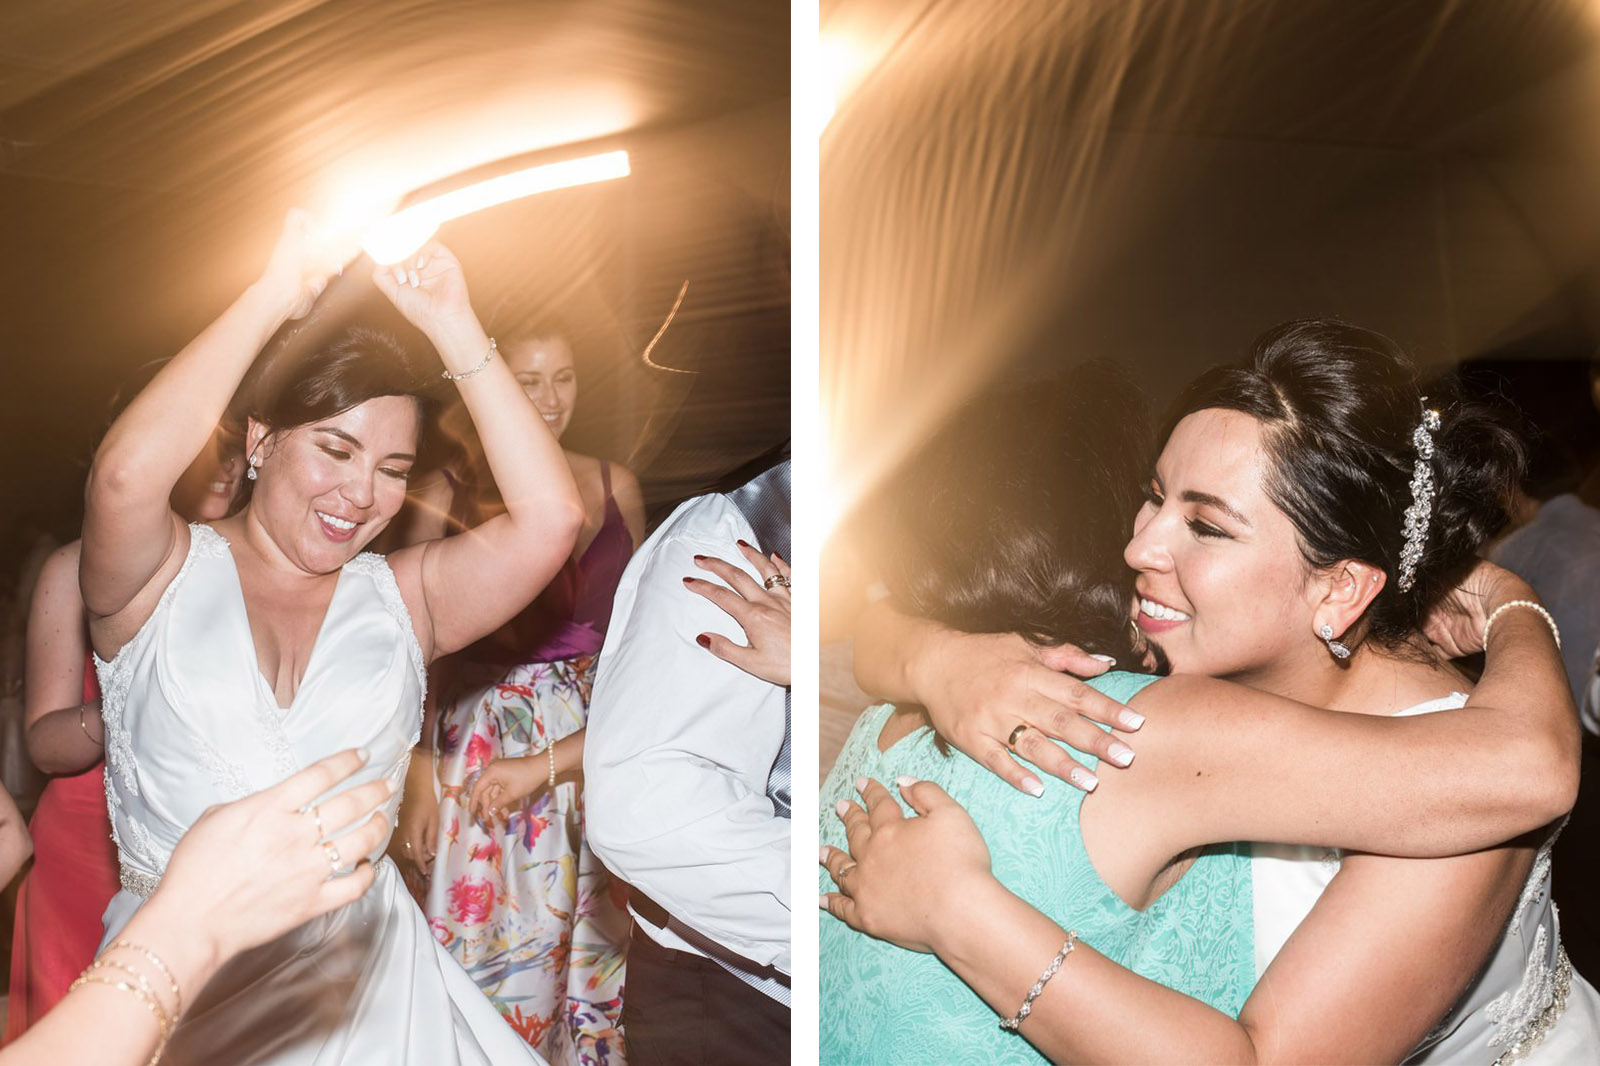 Fiorella Lucho aldo aguilar fotografo fotografia boda sesion novios retrato novia novio arequipa peru 24 hotel lago fiesta